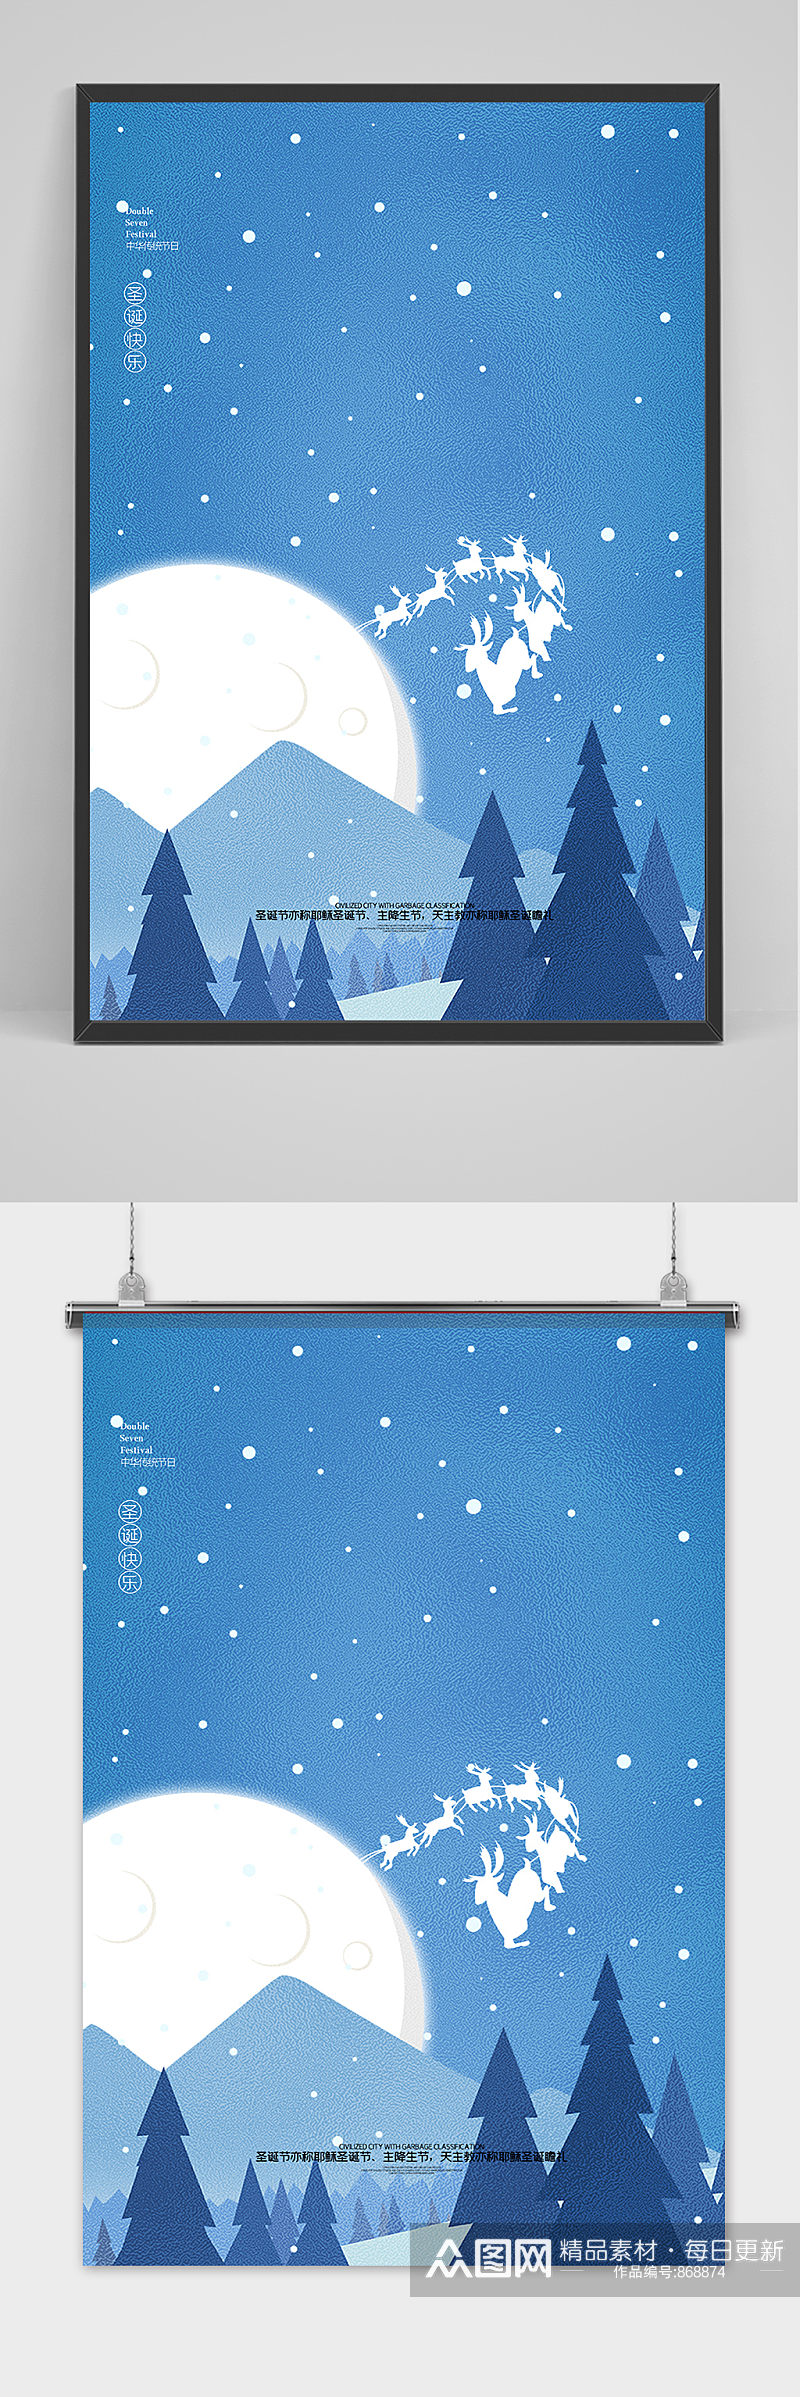 蓝色雪景卡通风格圣诞节户外海报背景素材